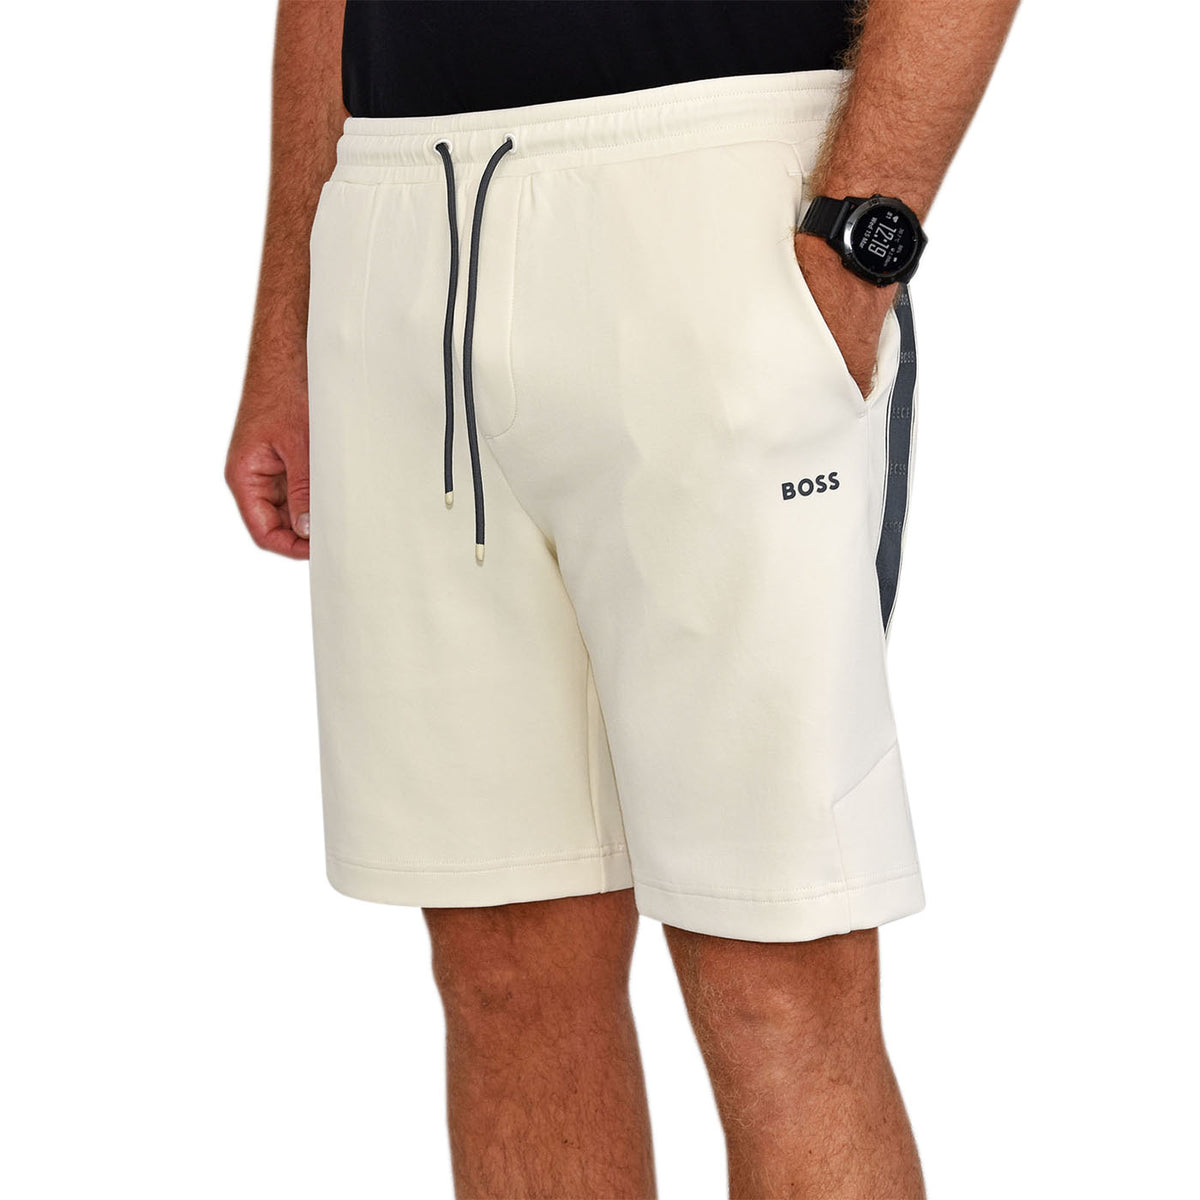 BOSS Headlo 1 Sport Shorts - Open White